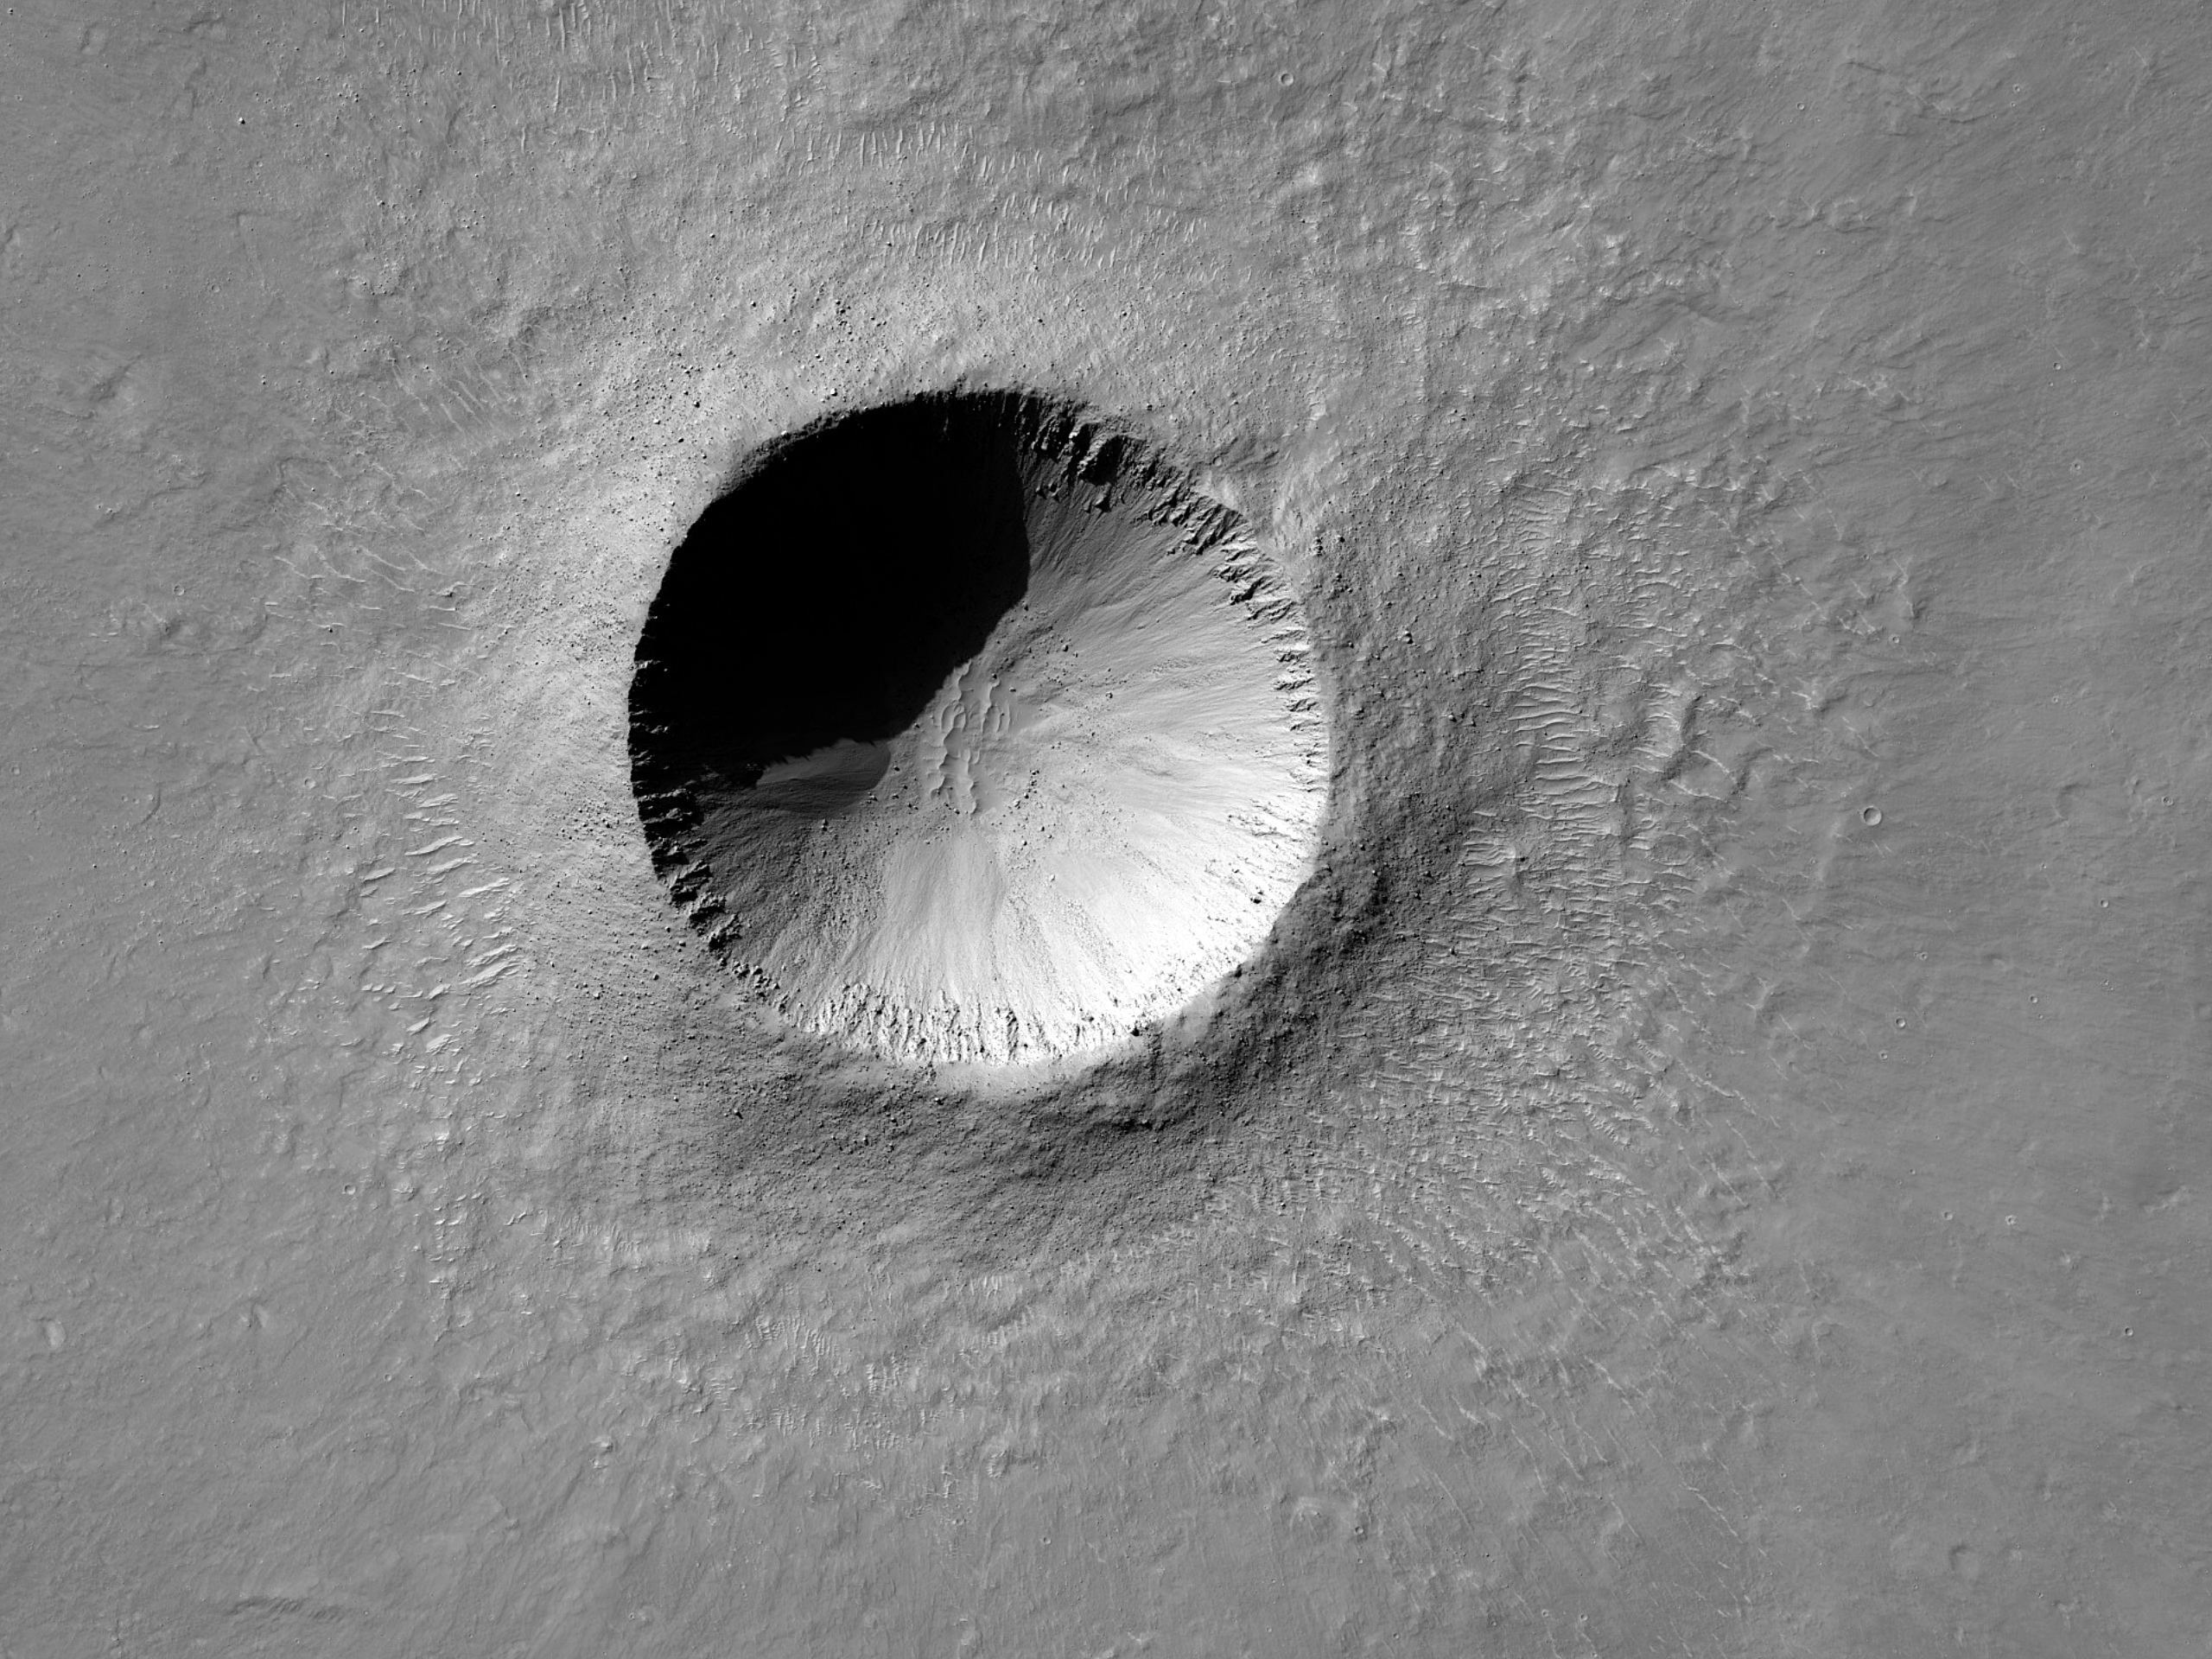 Gusev Krateri